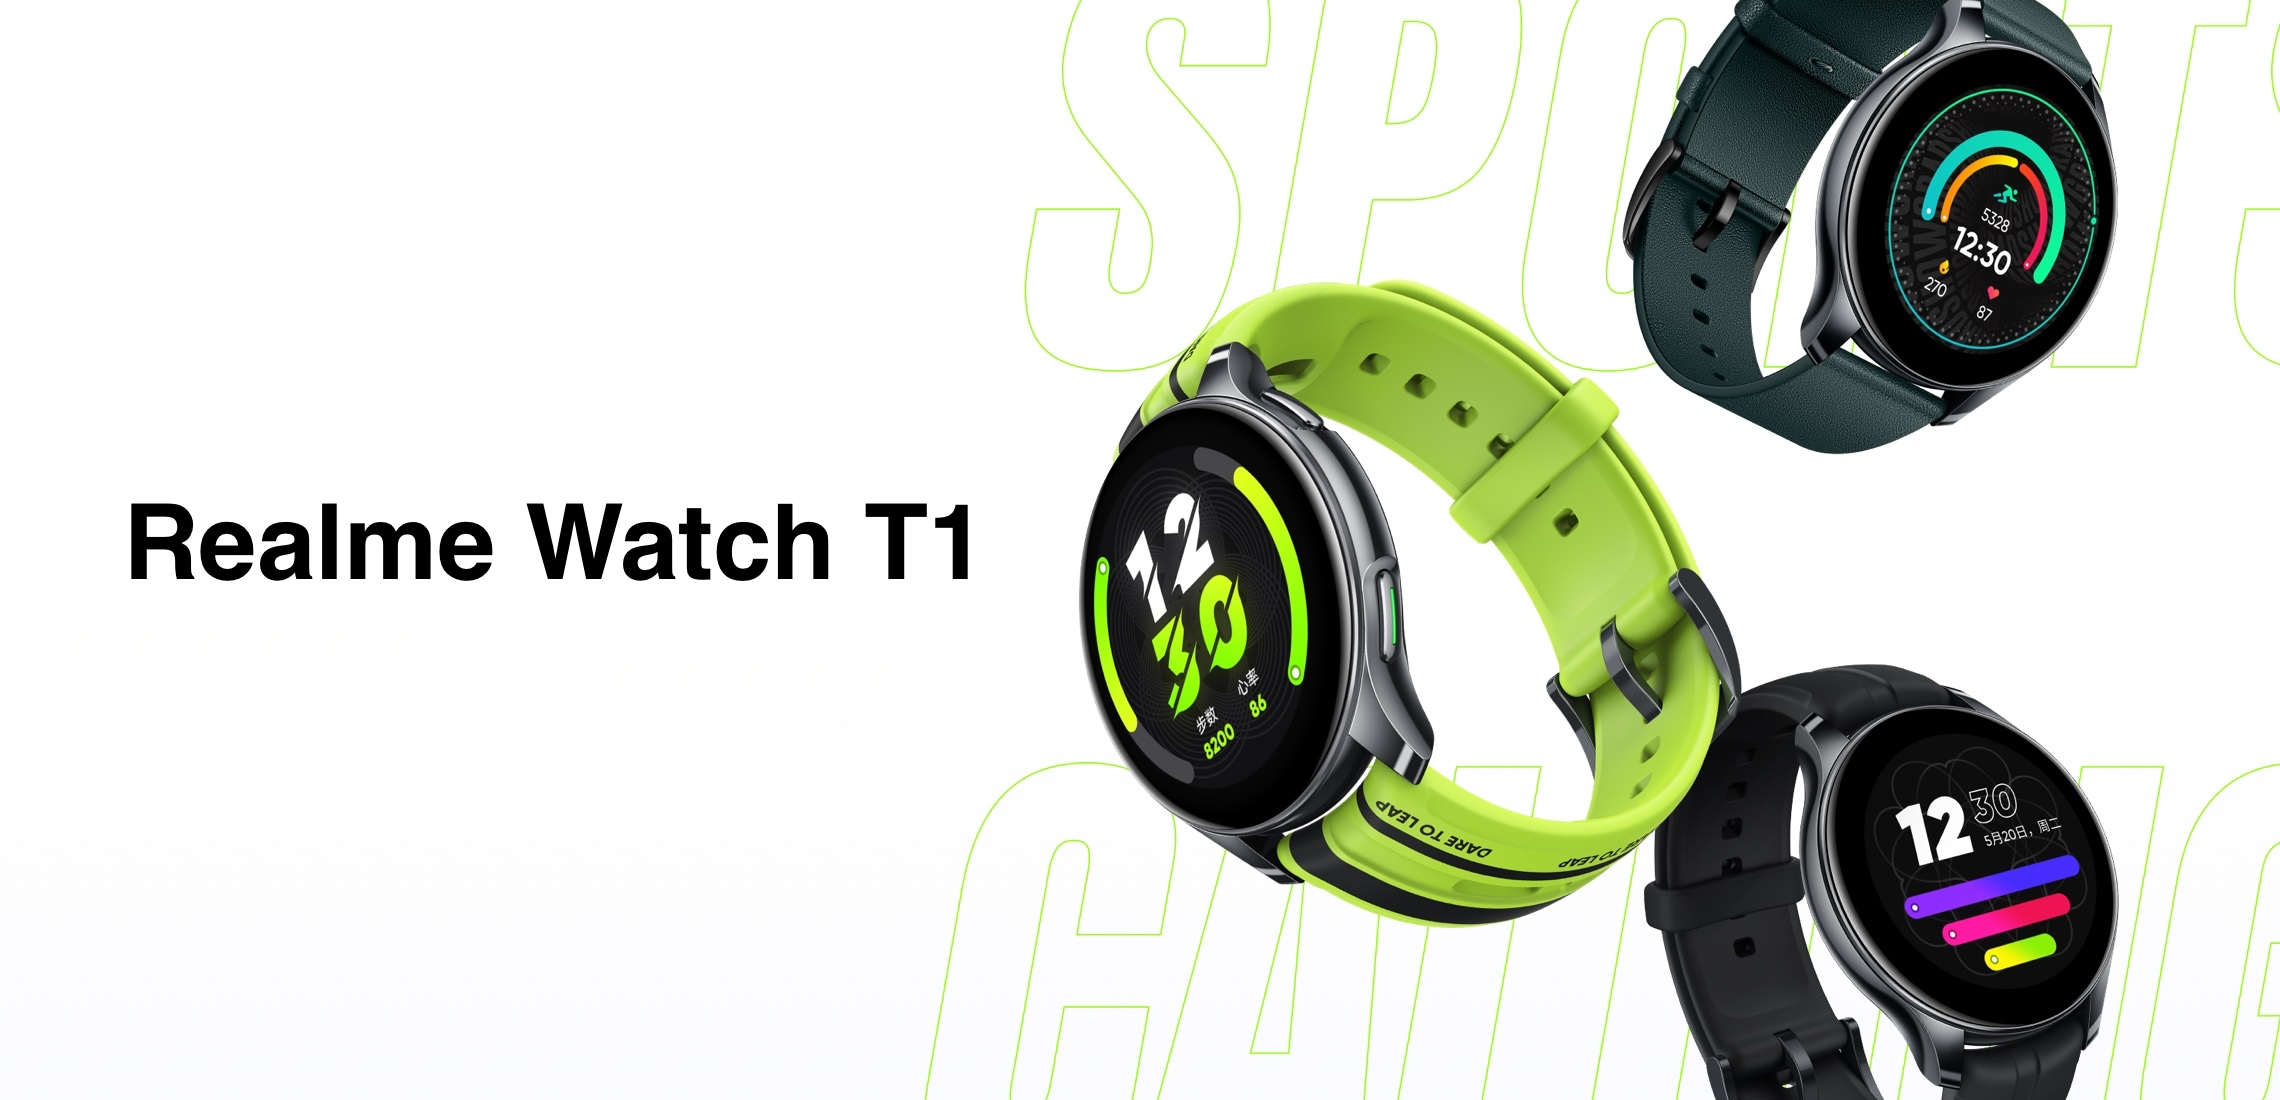 Realme Watch T1: Okrągły wyświetlacz AMOLED, czujnik SpO2, 110 trybów sportowych, NFC i do 7 dni pracy na baterii za 110 dolarów